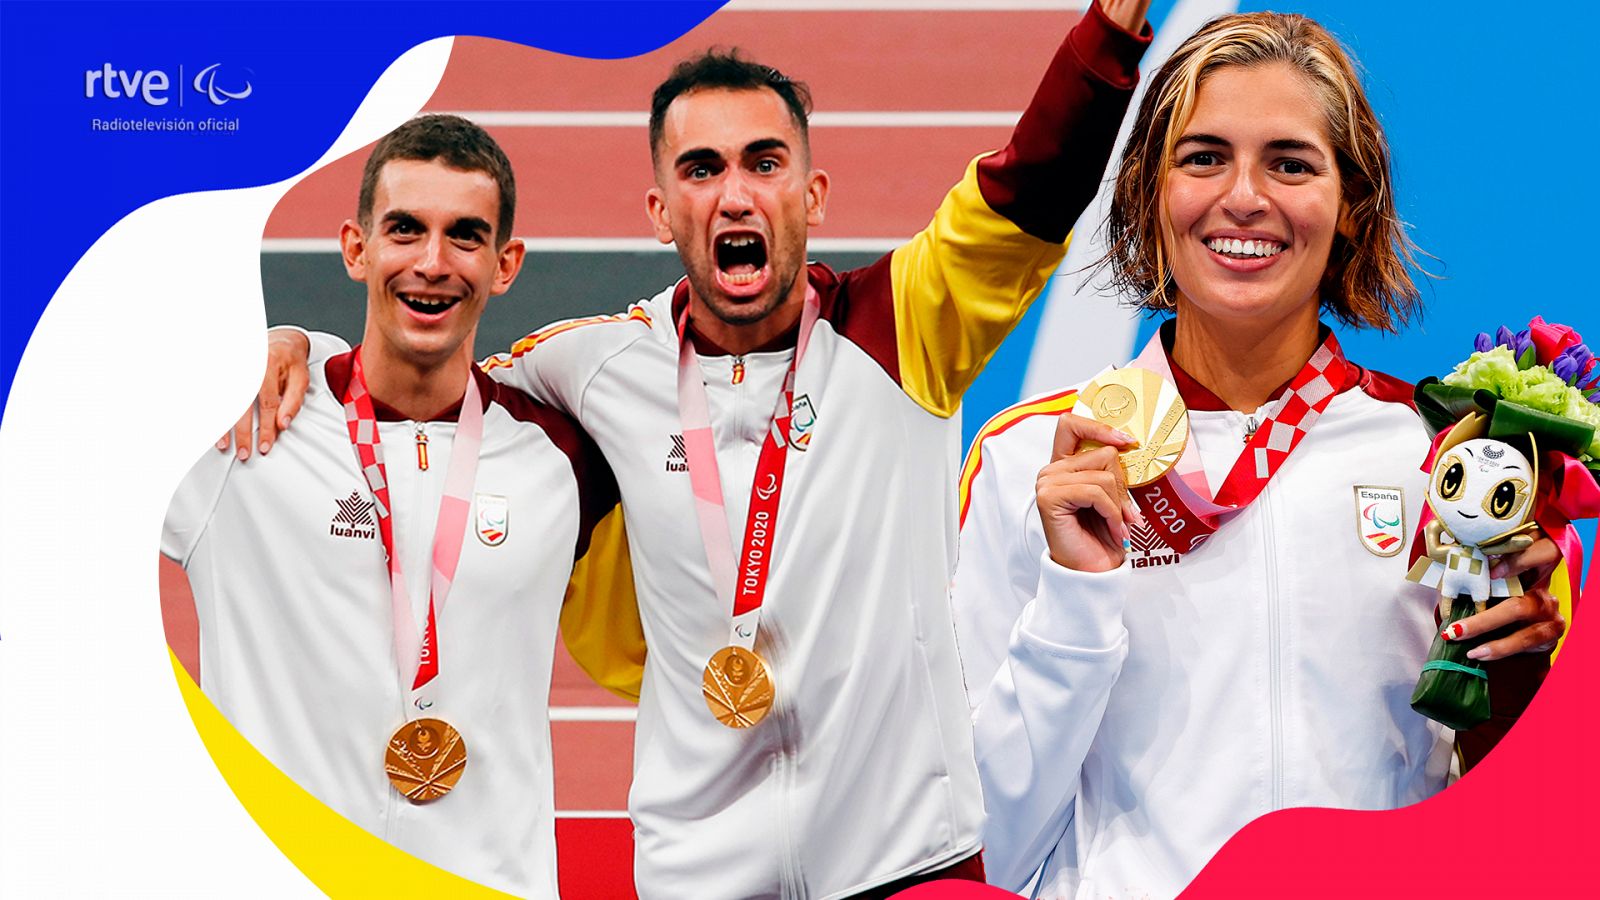 España sigue coleccionando medallas en natación, triatlón y atletismo